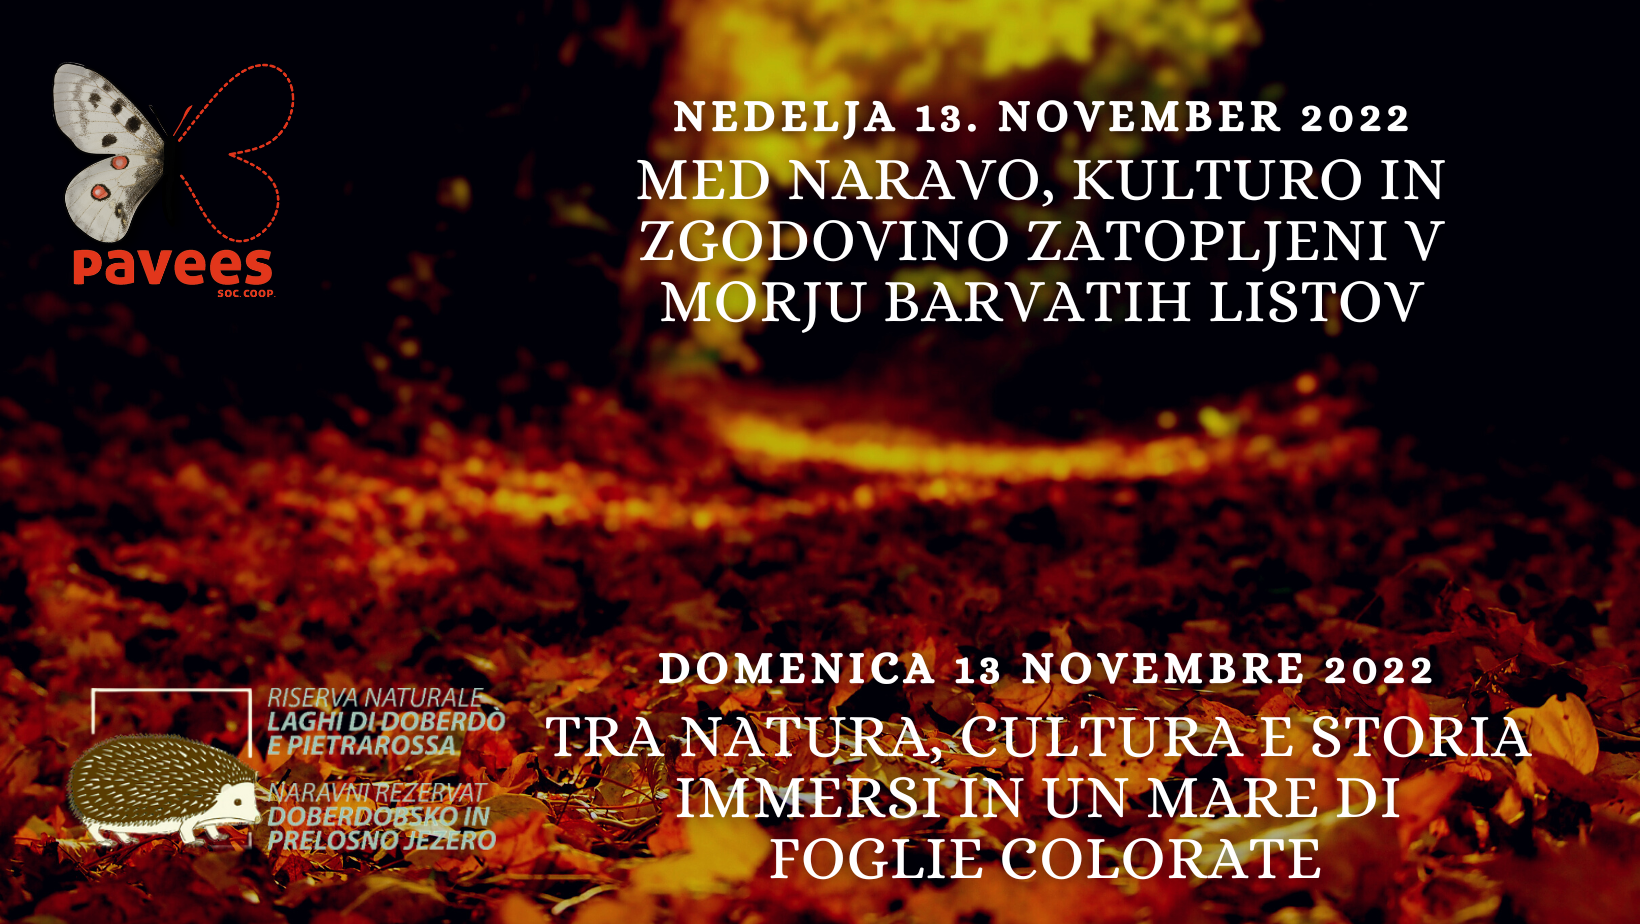 Domenica 13 novembre - Tra natura, cultura e storia immersi in un mare di foglie colorate